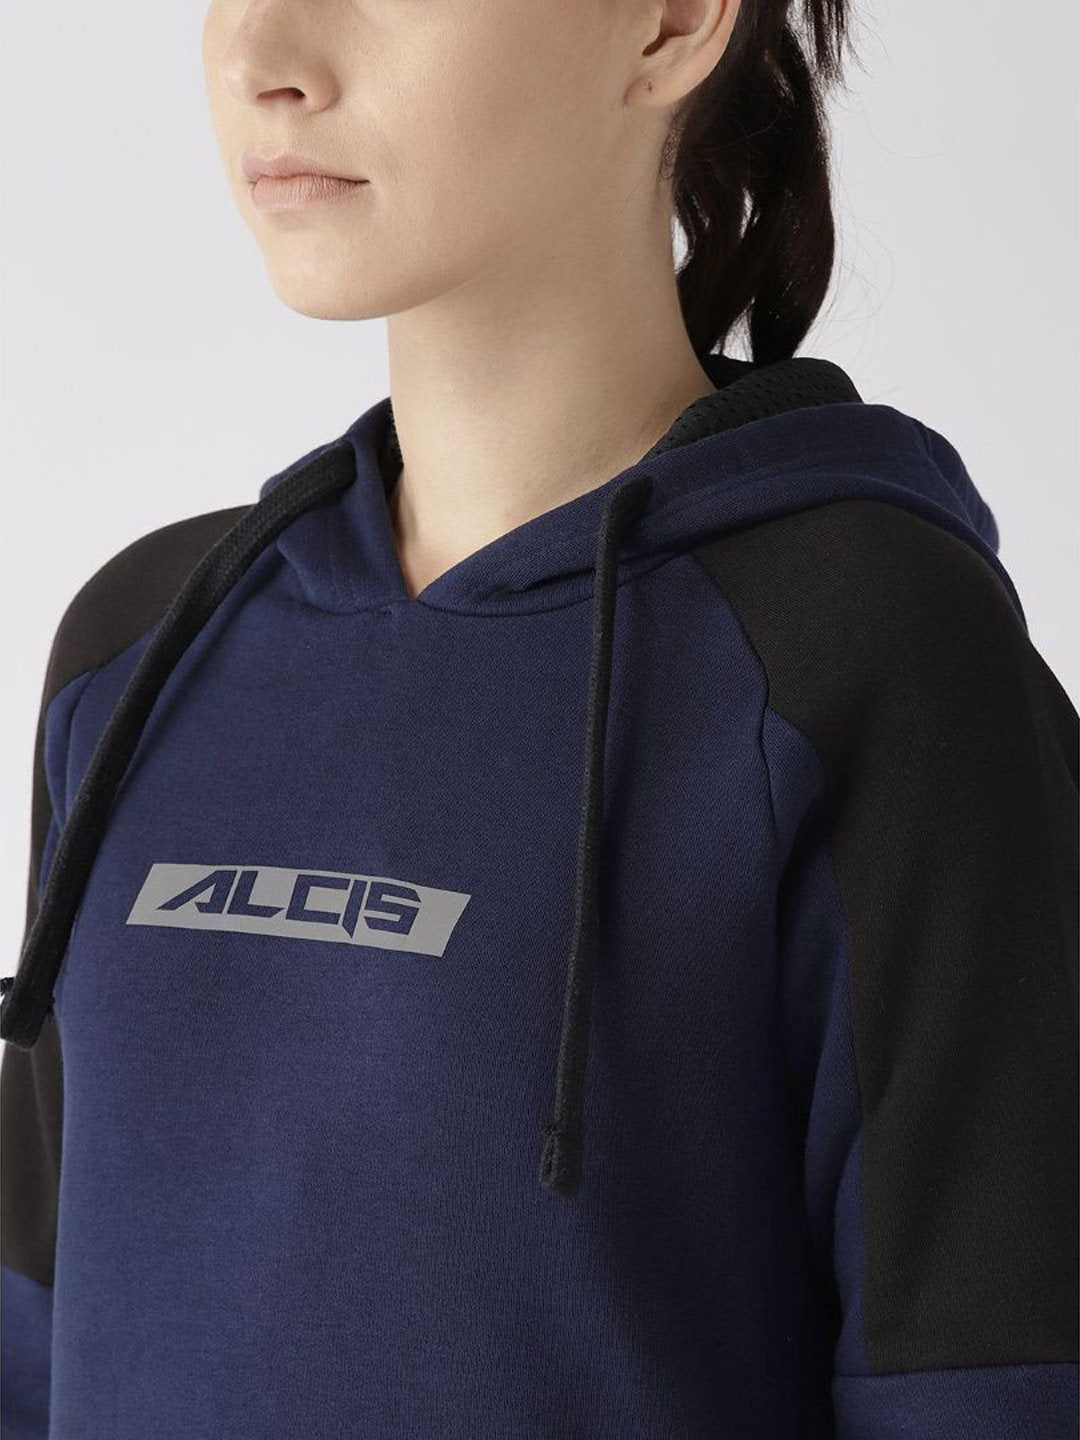 Alcis Women Navy Blue Printed Detail Hooded Sweatshirt